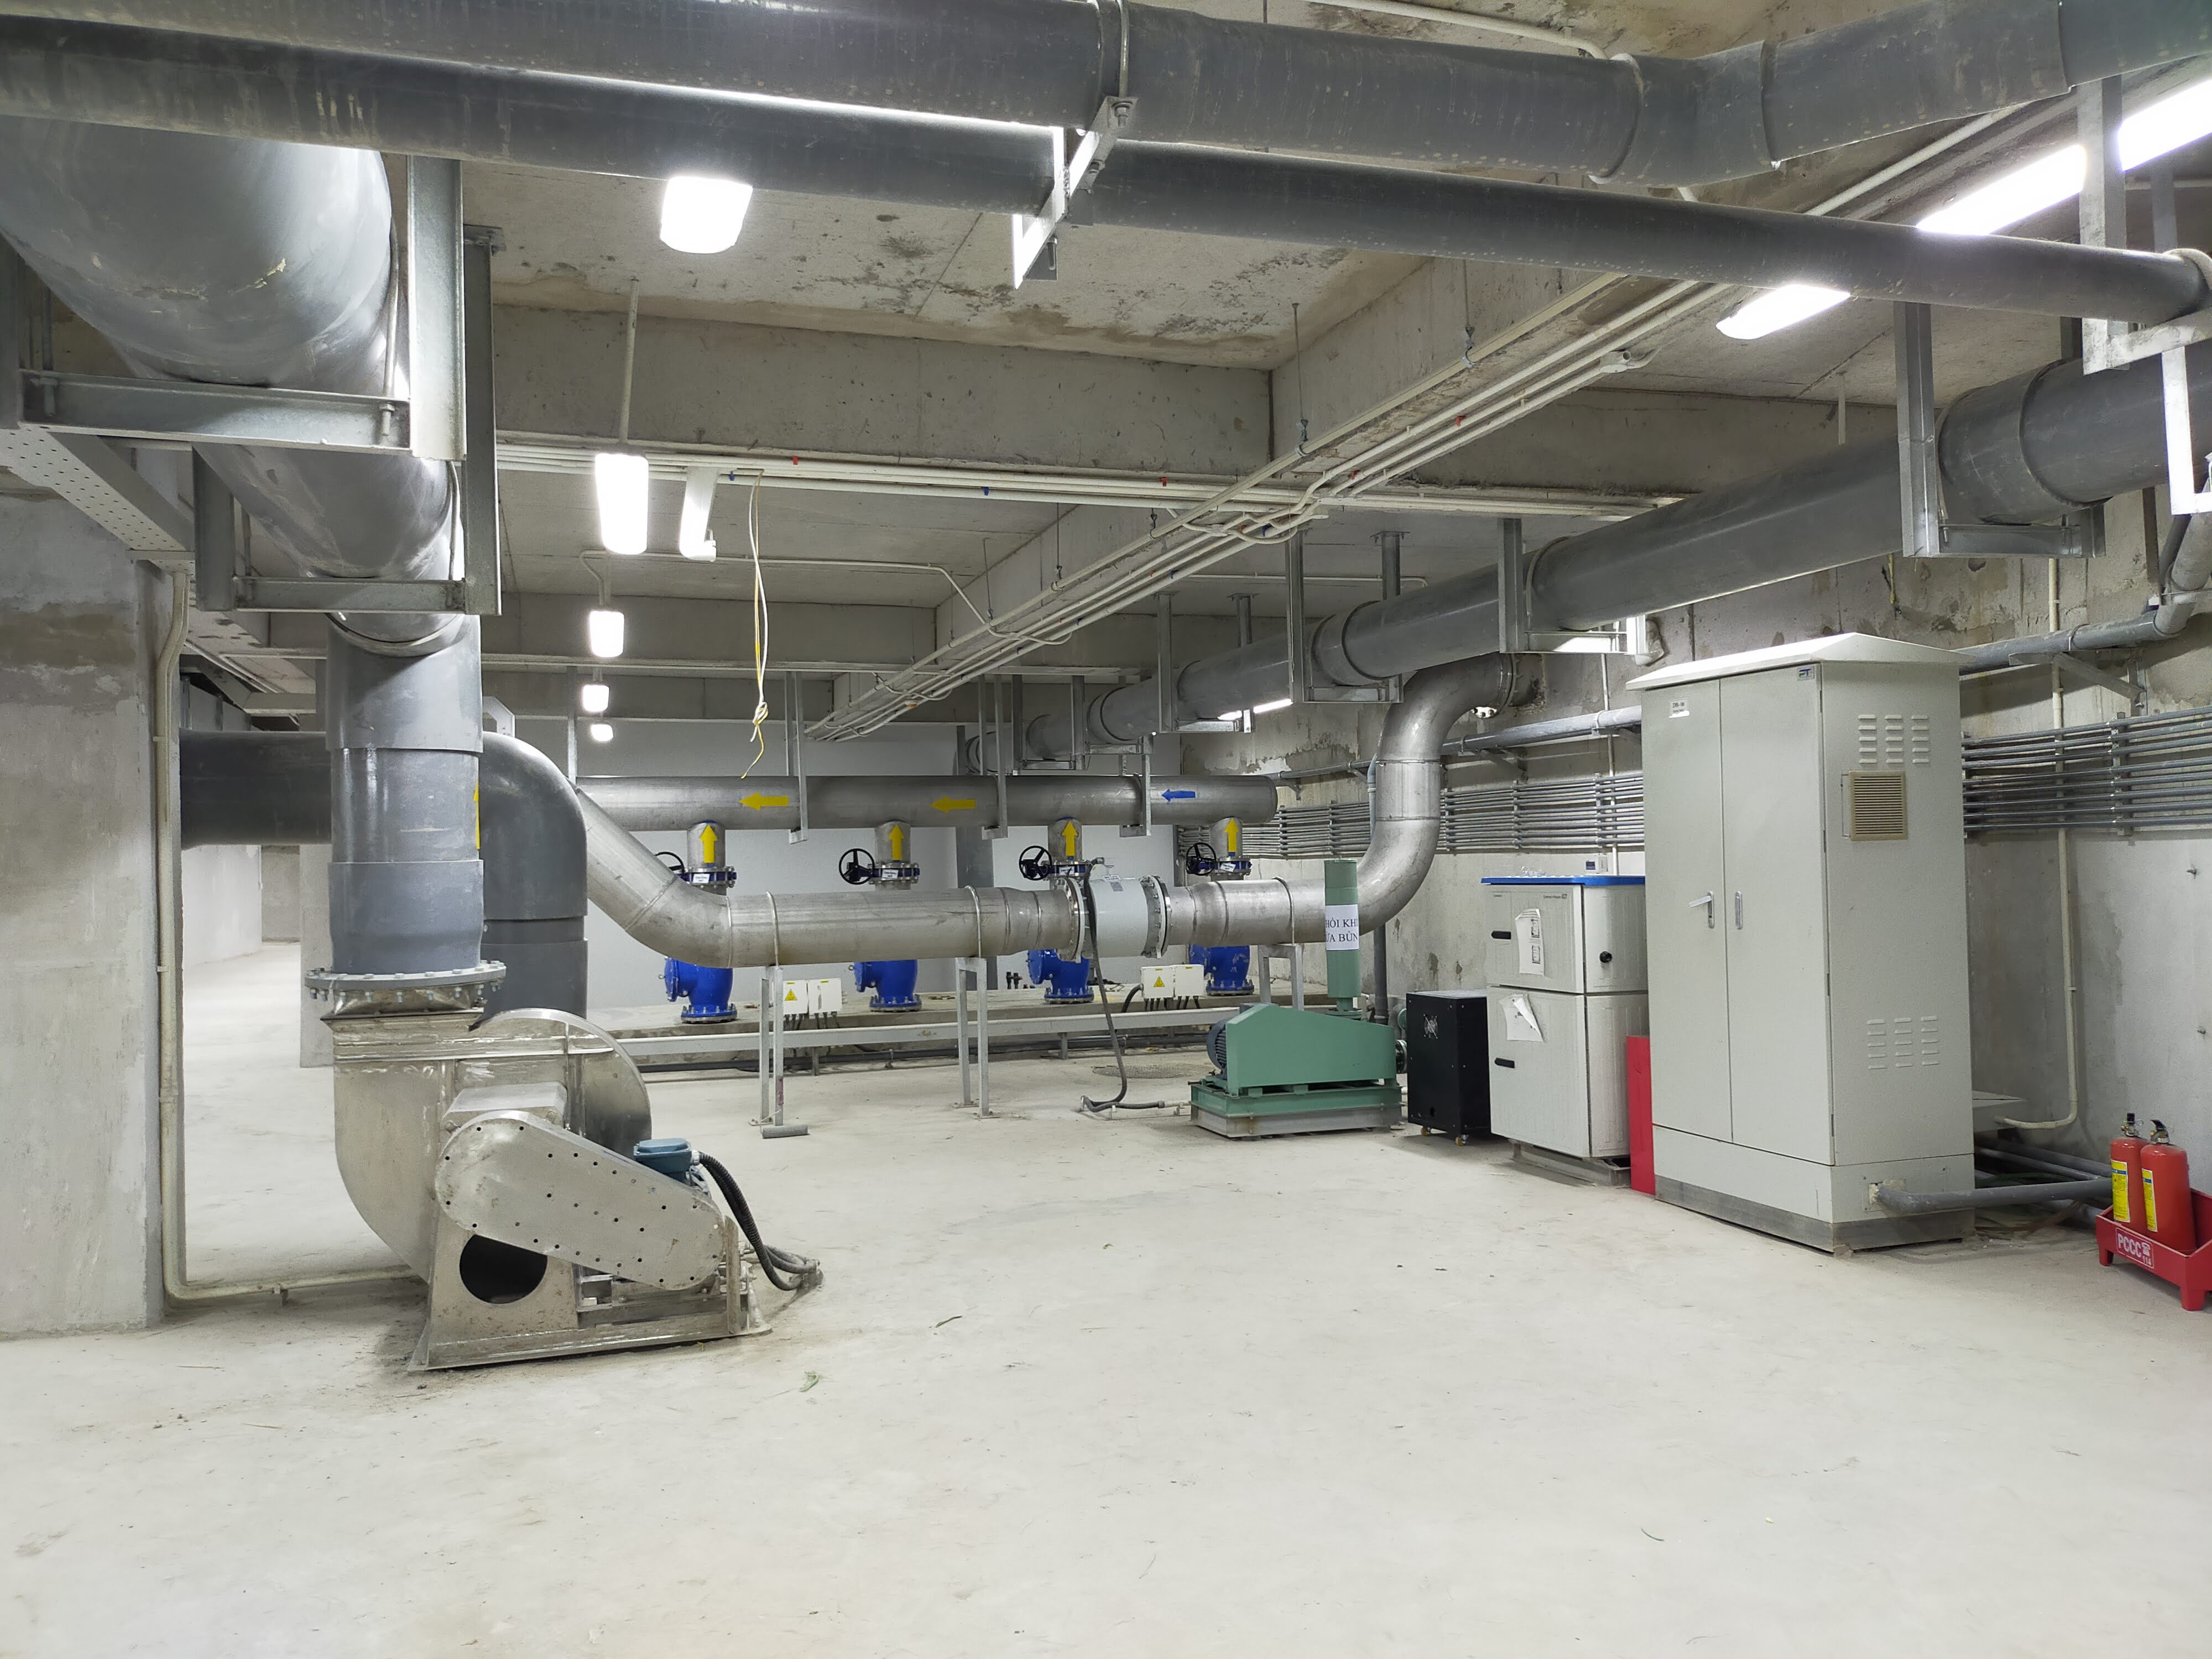 Tinh Tuệ cung cấp thiết bị xử lý nước thải cho Dự án Vinhomes Grand Park